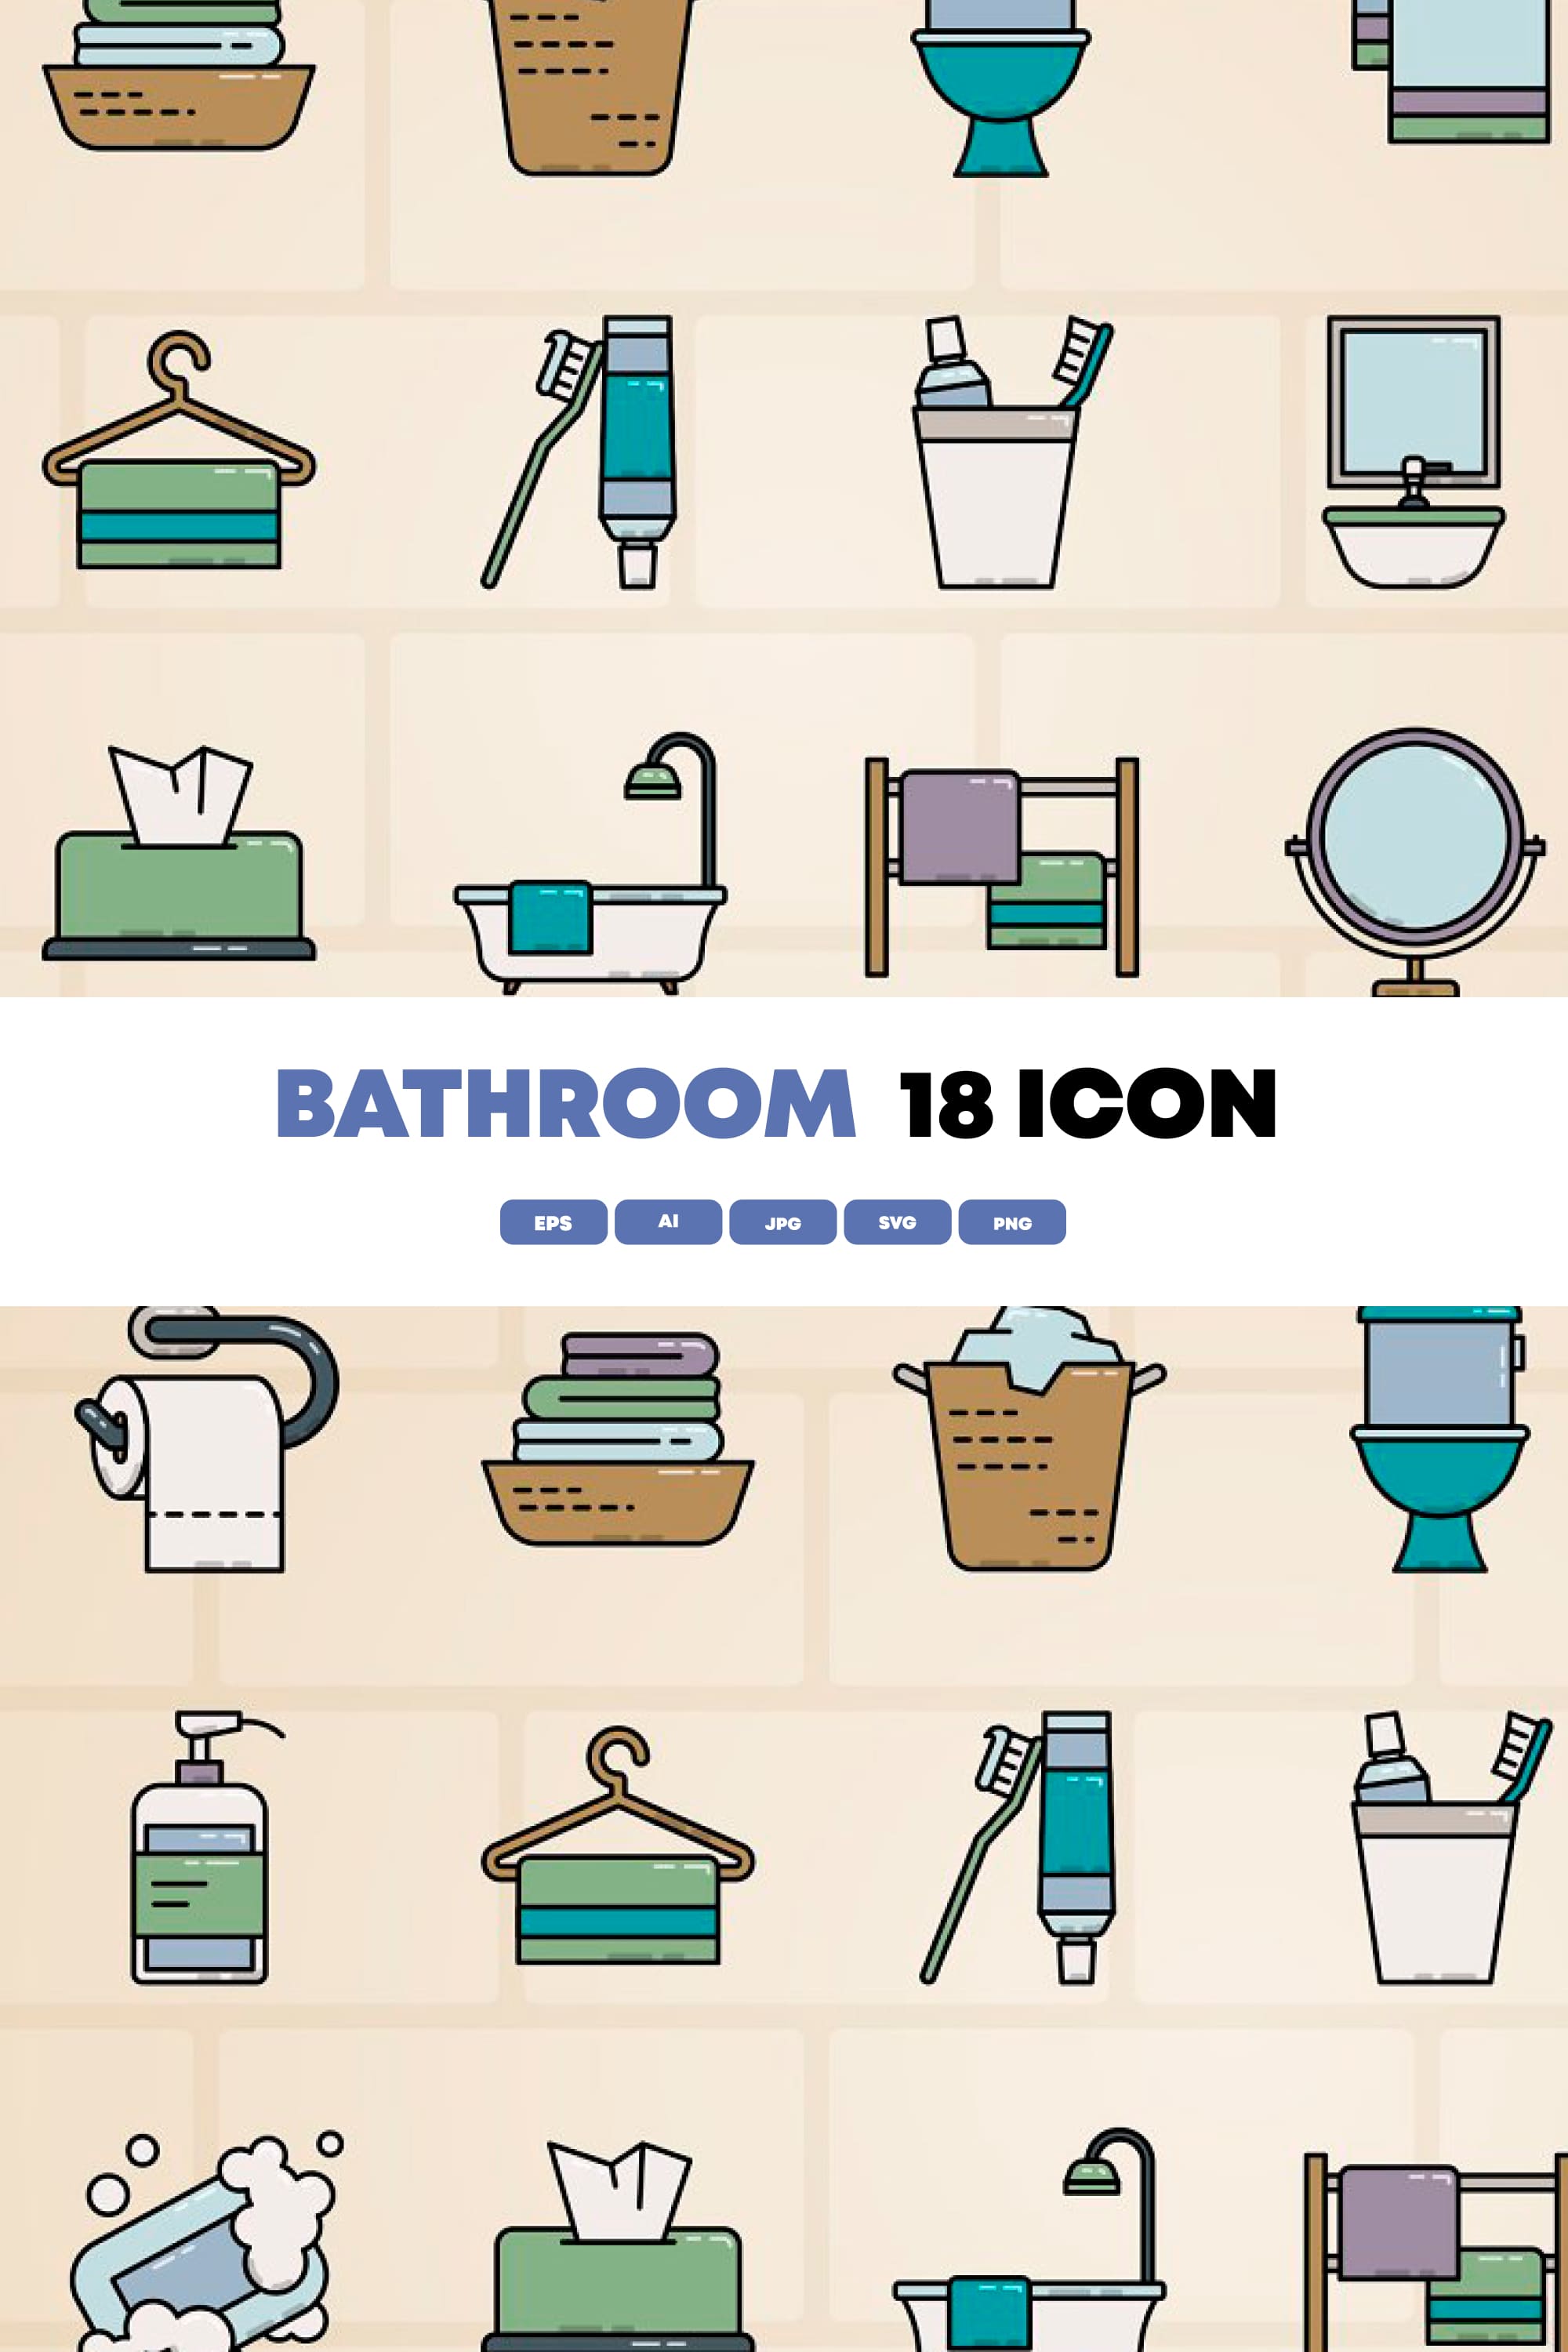 18 bathroom icon pinterest 1